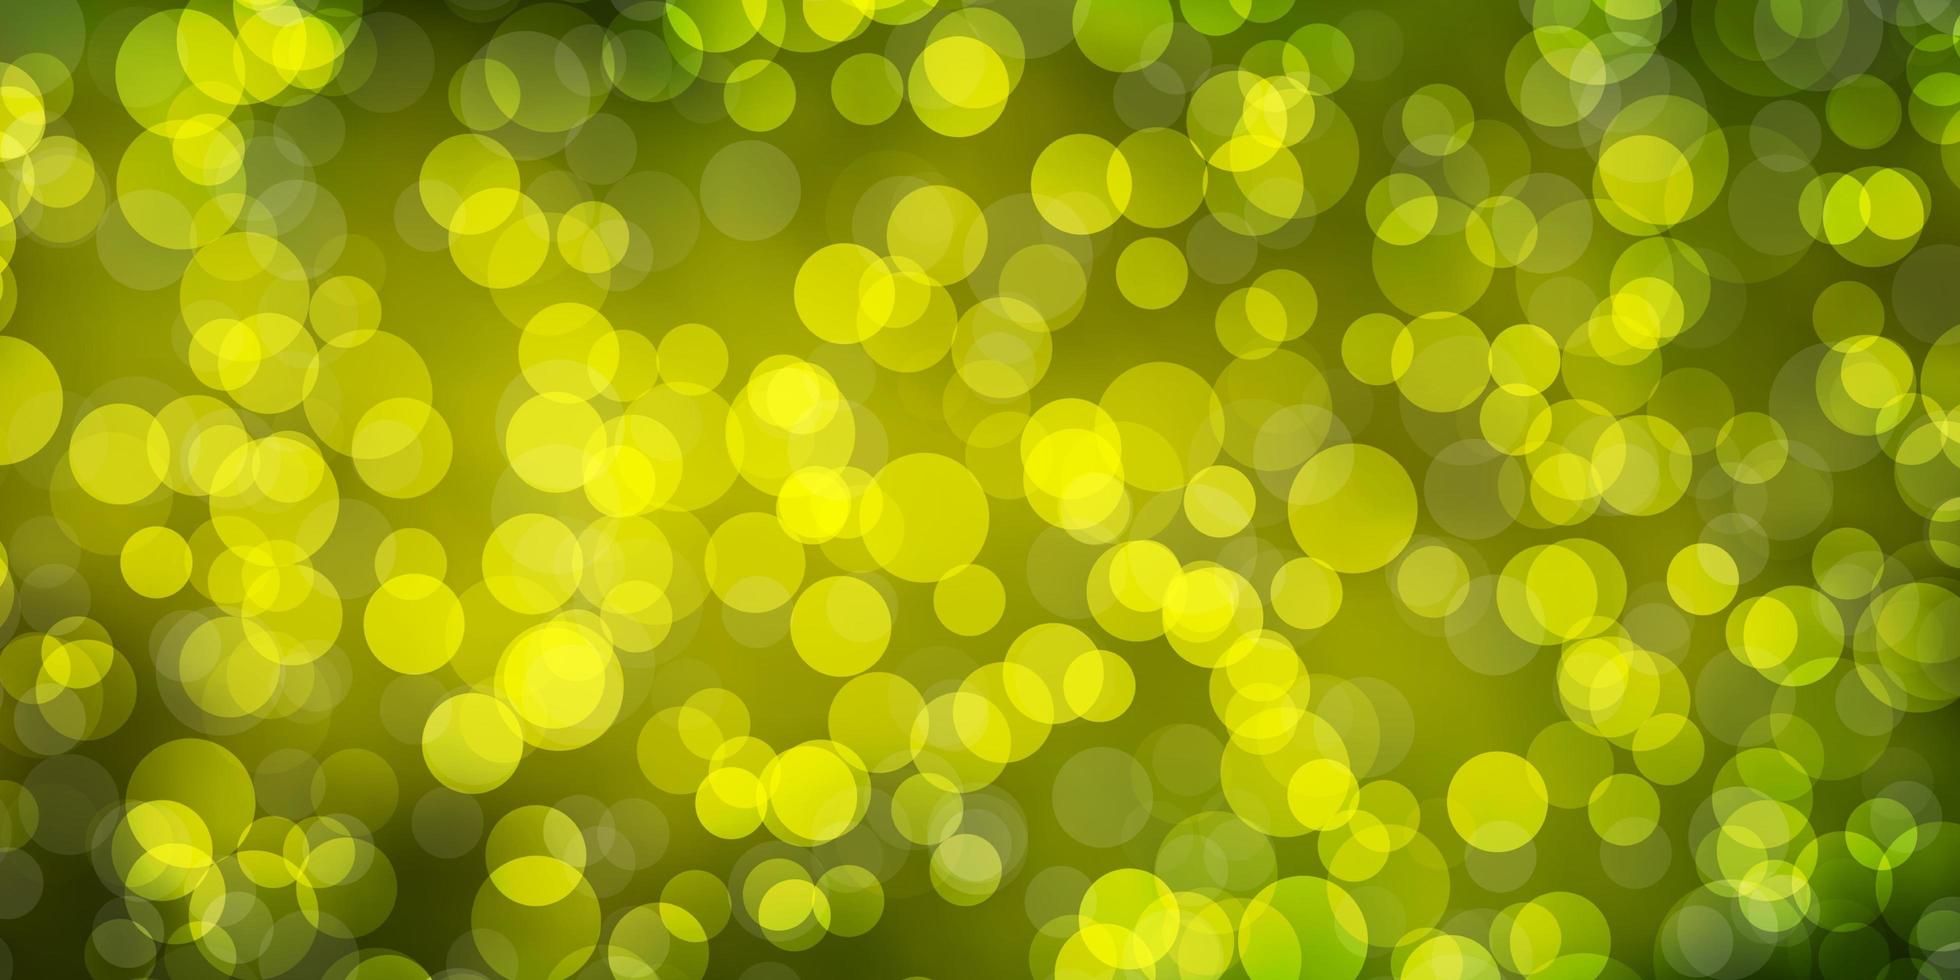 diseño de vector verde claro, amarillo con círculos.